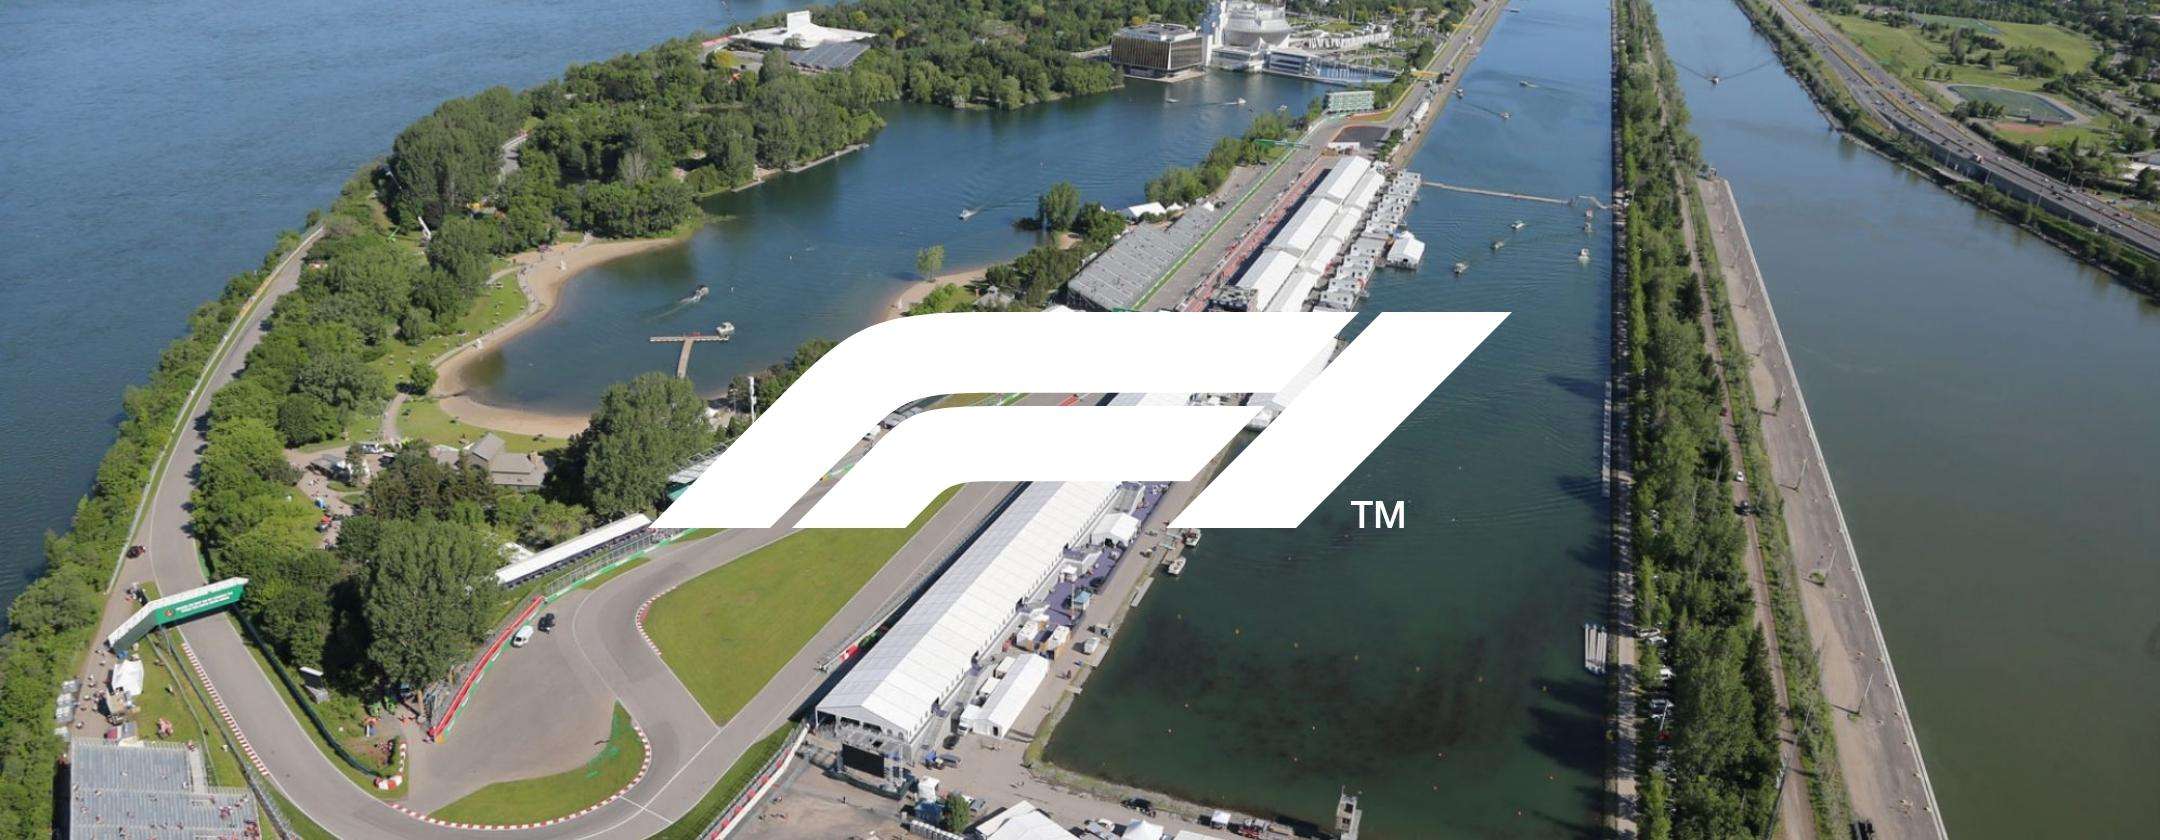 Formula 1 orari e programmazione streaming del GP di Canada